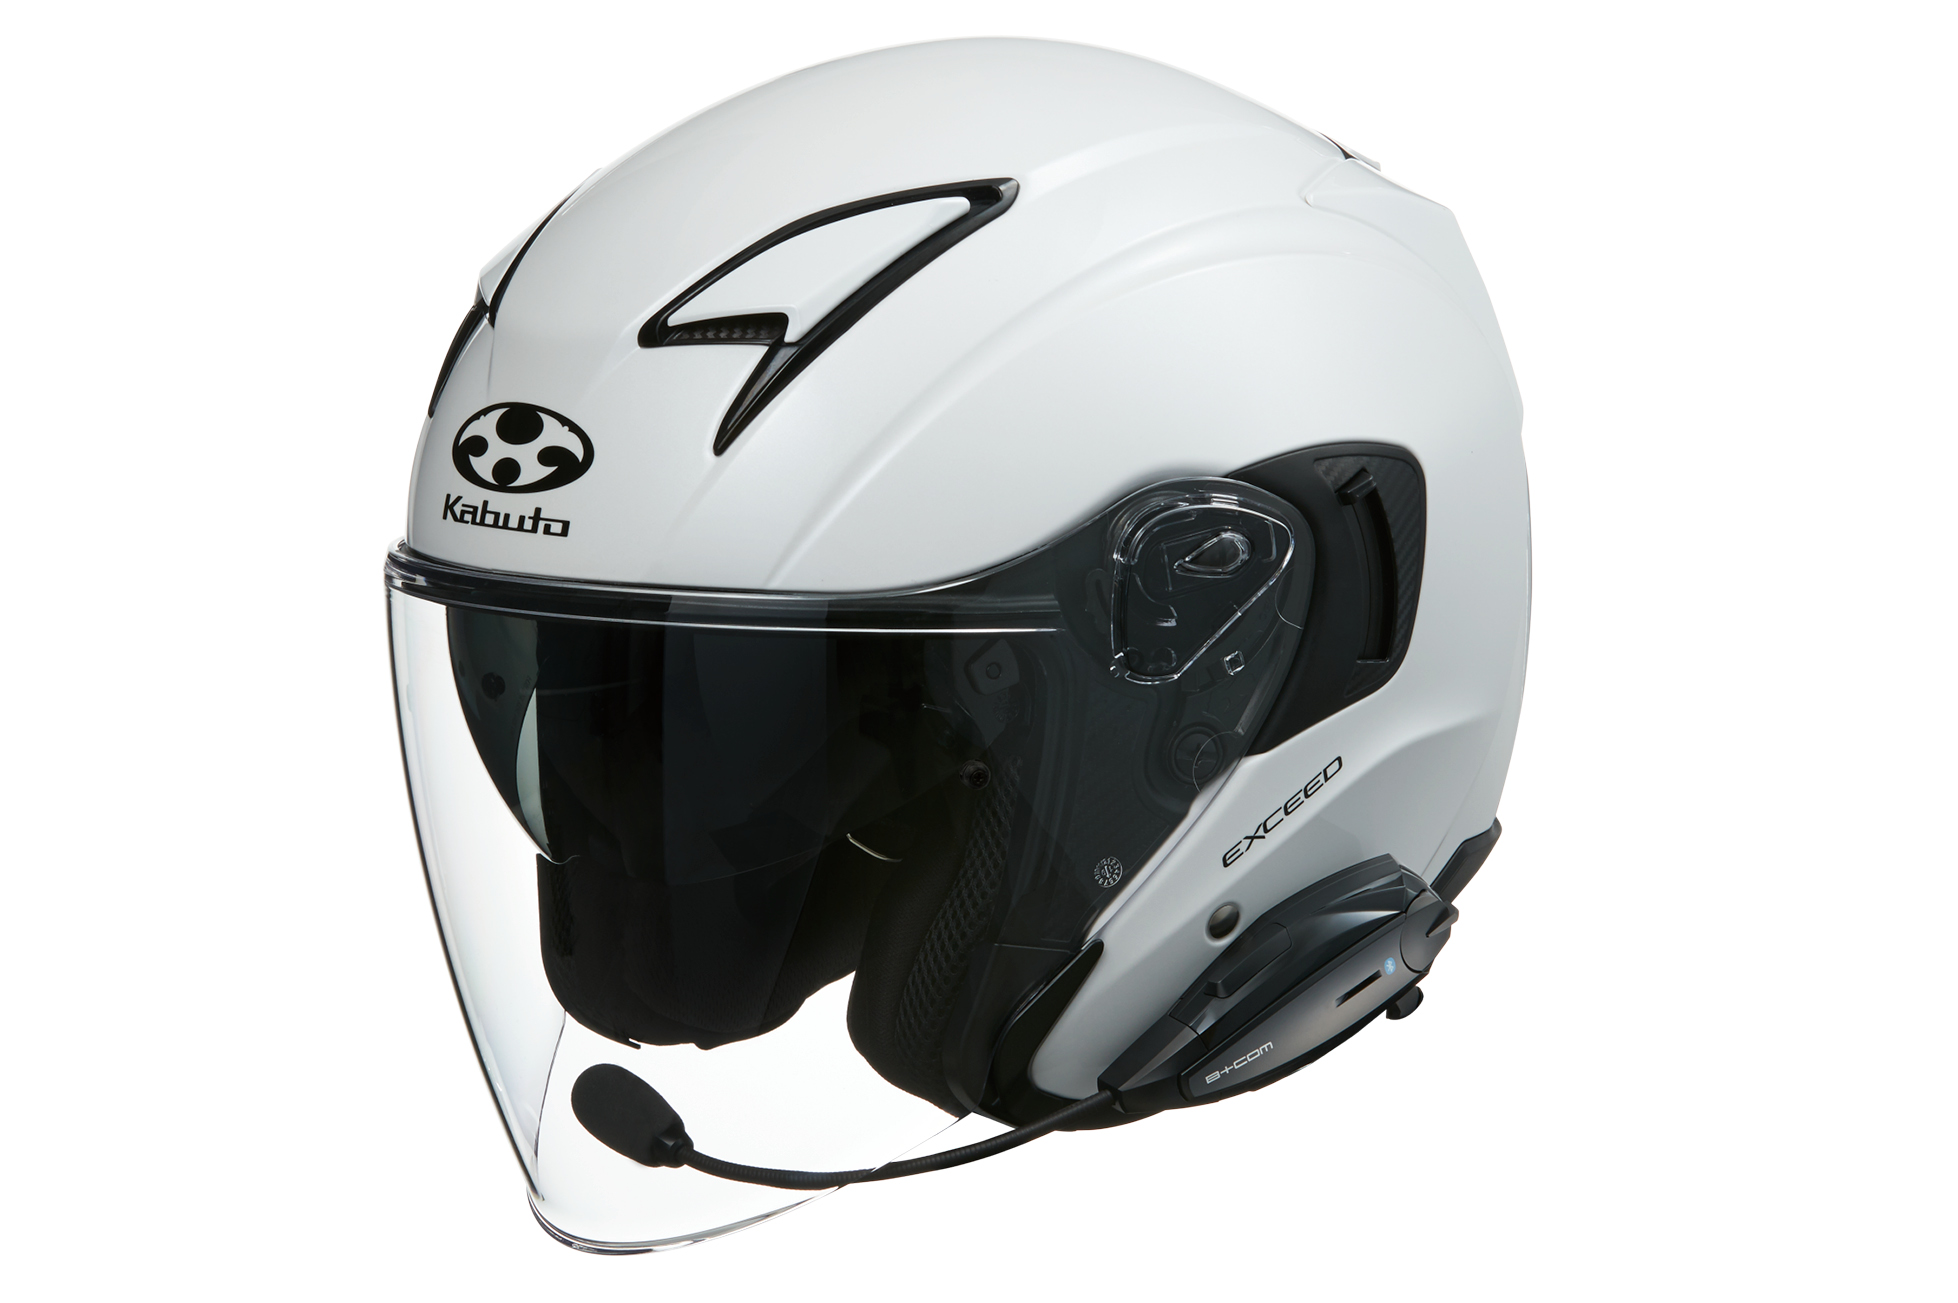 B+COM ONE バイク用インカム ジェットヘルメット取付方法 OGK KABUTO 